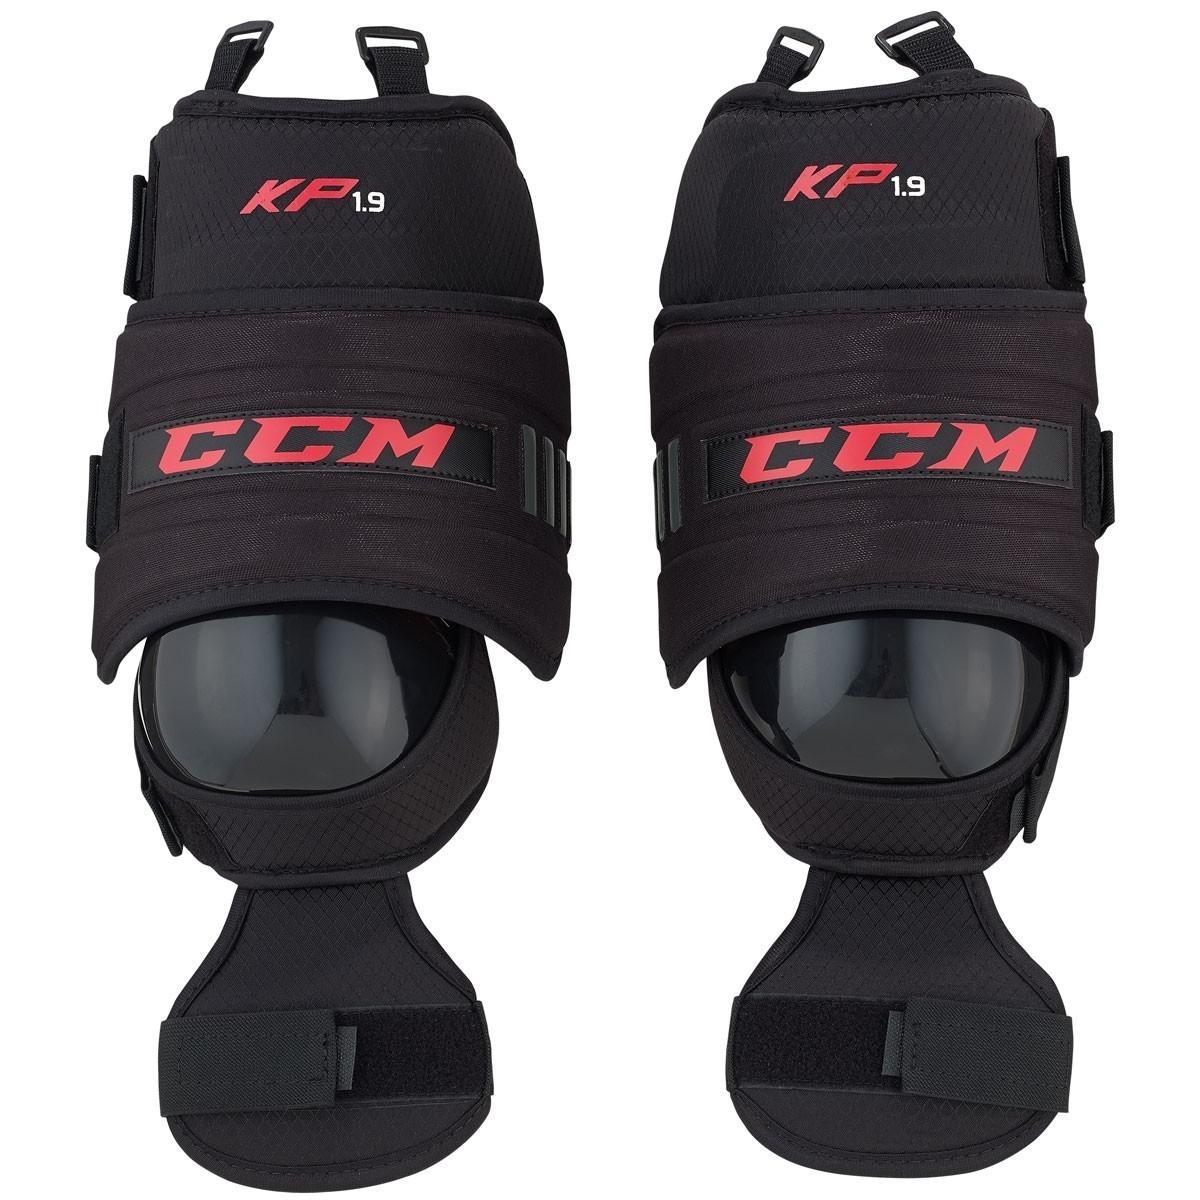 CCM 1.9 Sr. Goalie Knee Guardsproduct zoom image #1